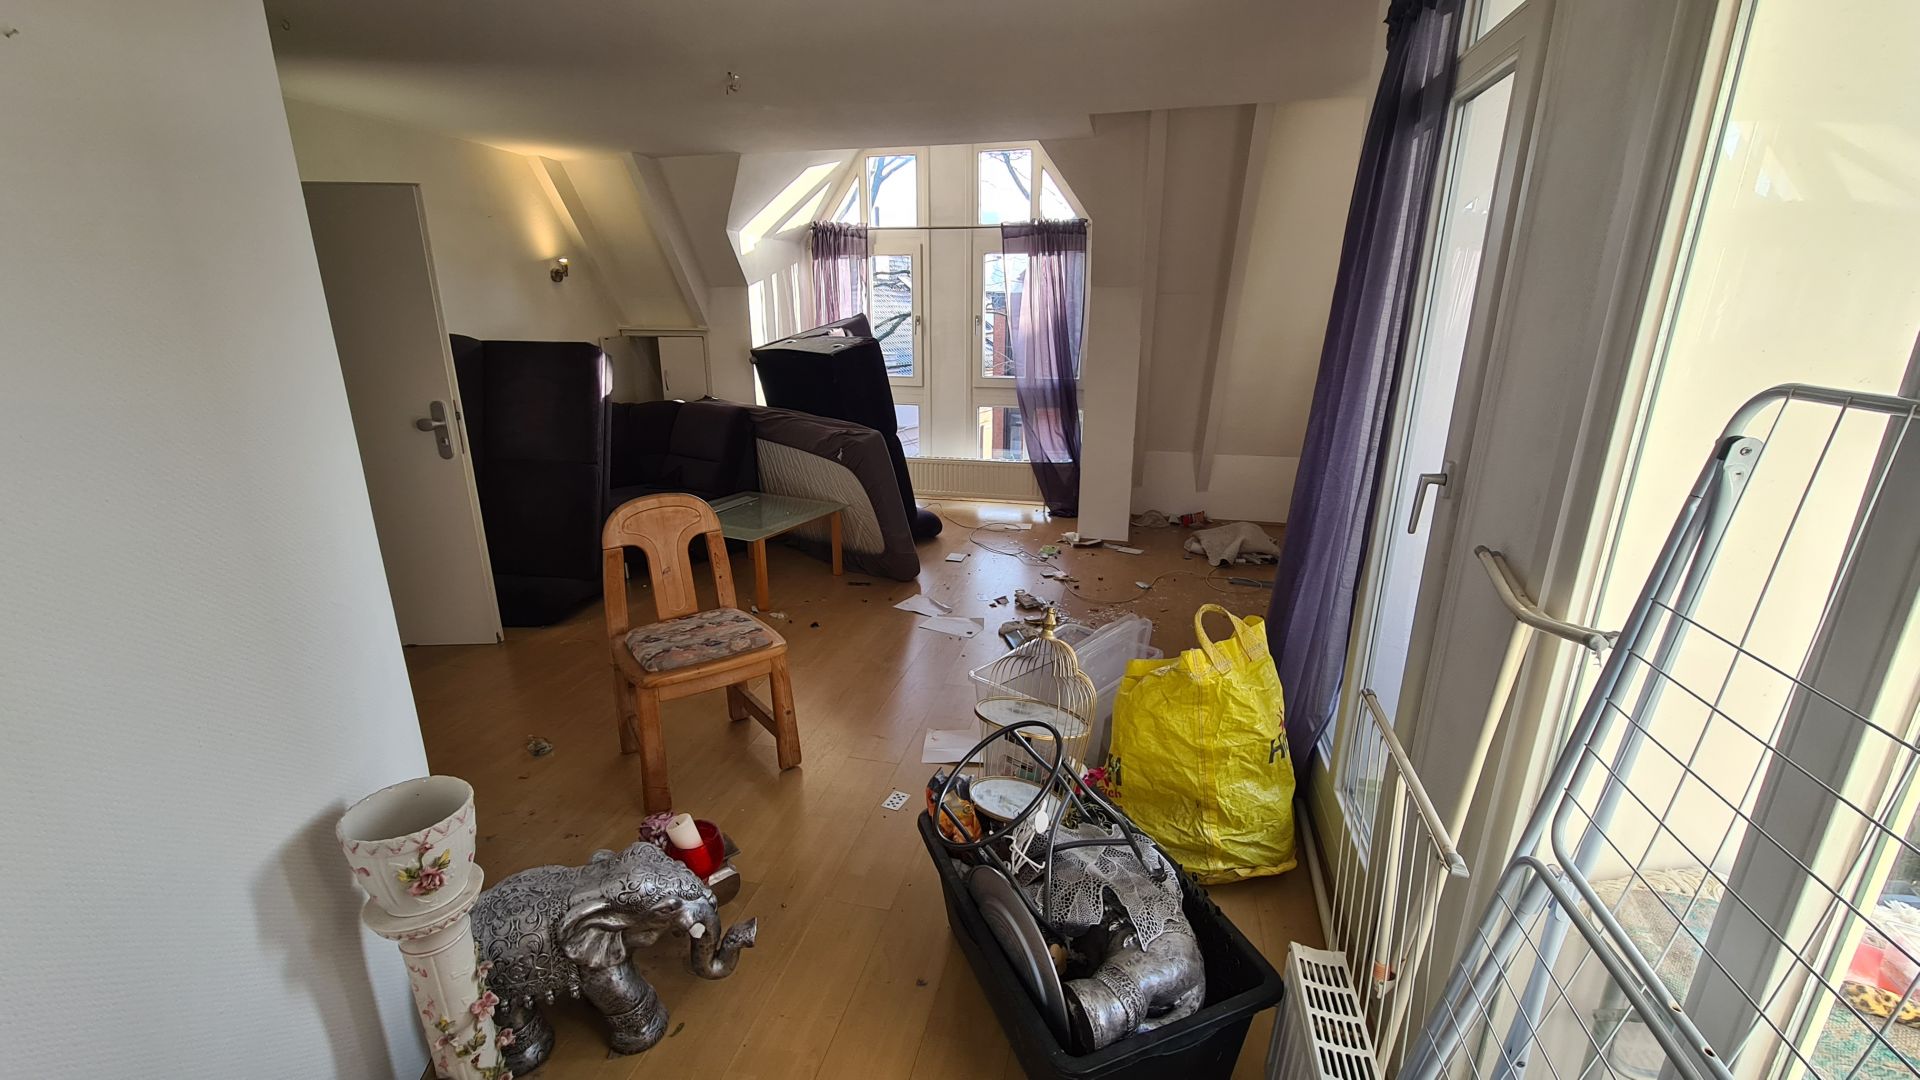 Wohnraum während einer Haushaltsauflösung in Bremen